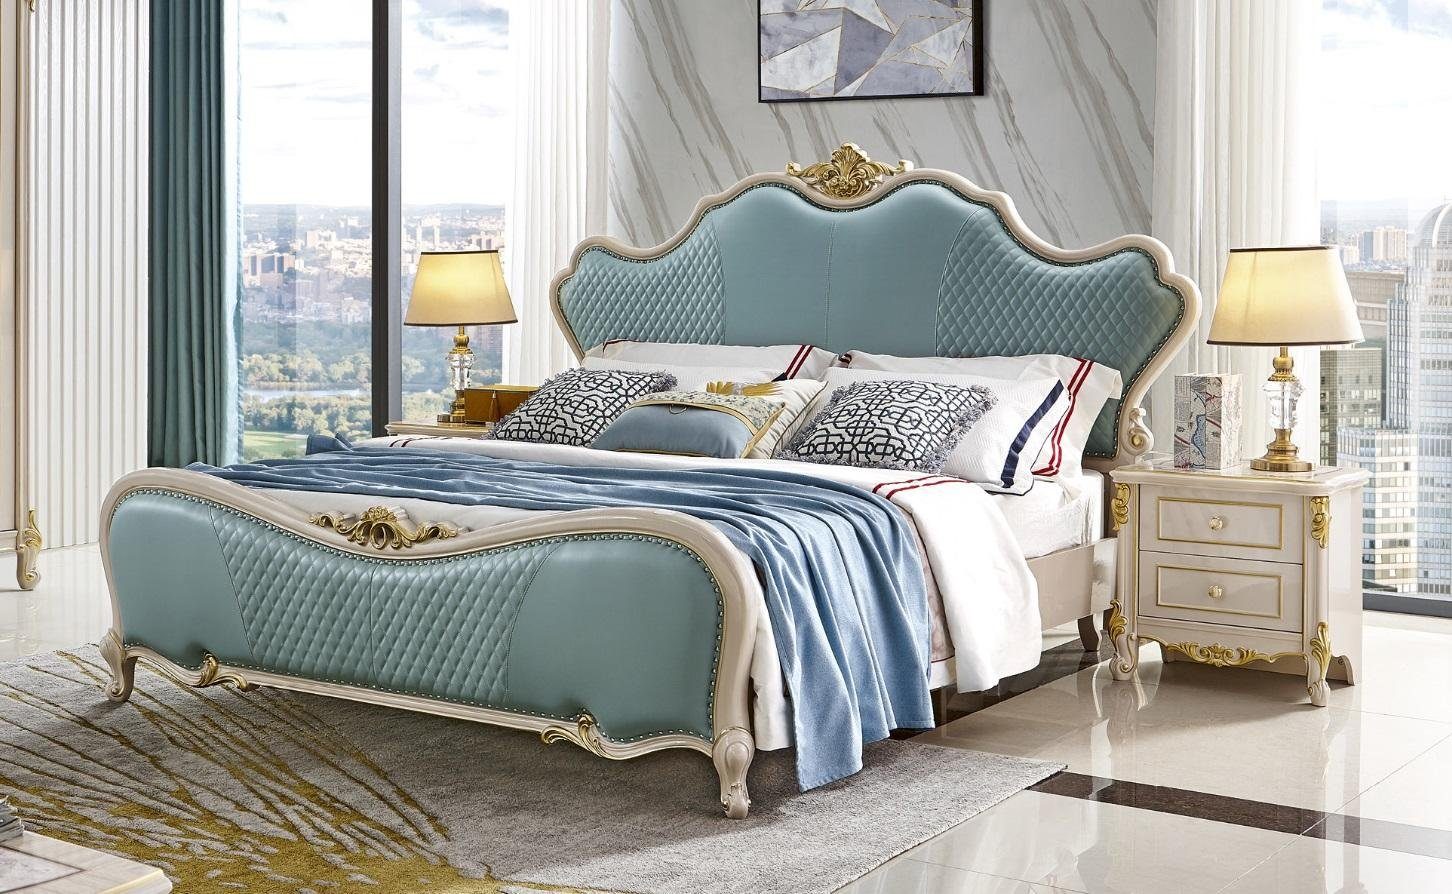 JVmoebel Bett, Designer Doppelbett Bett Betten Leder Chesterfield Hotel Luxus